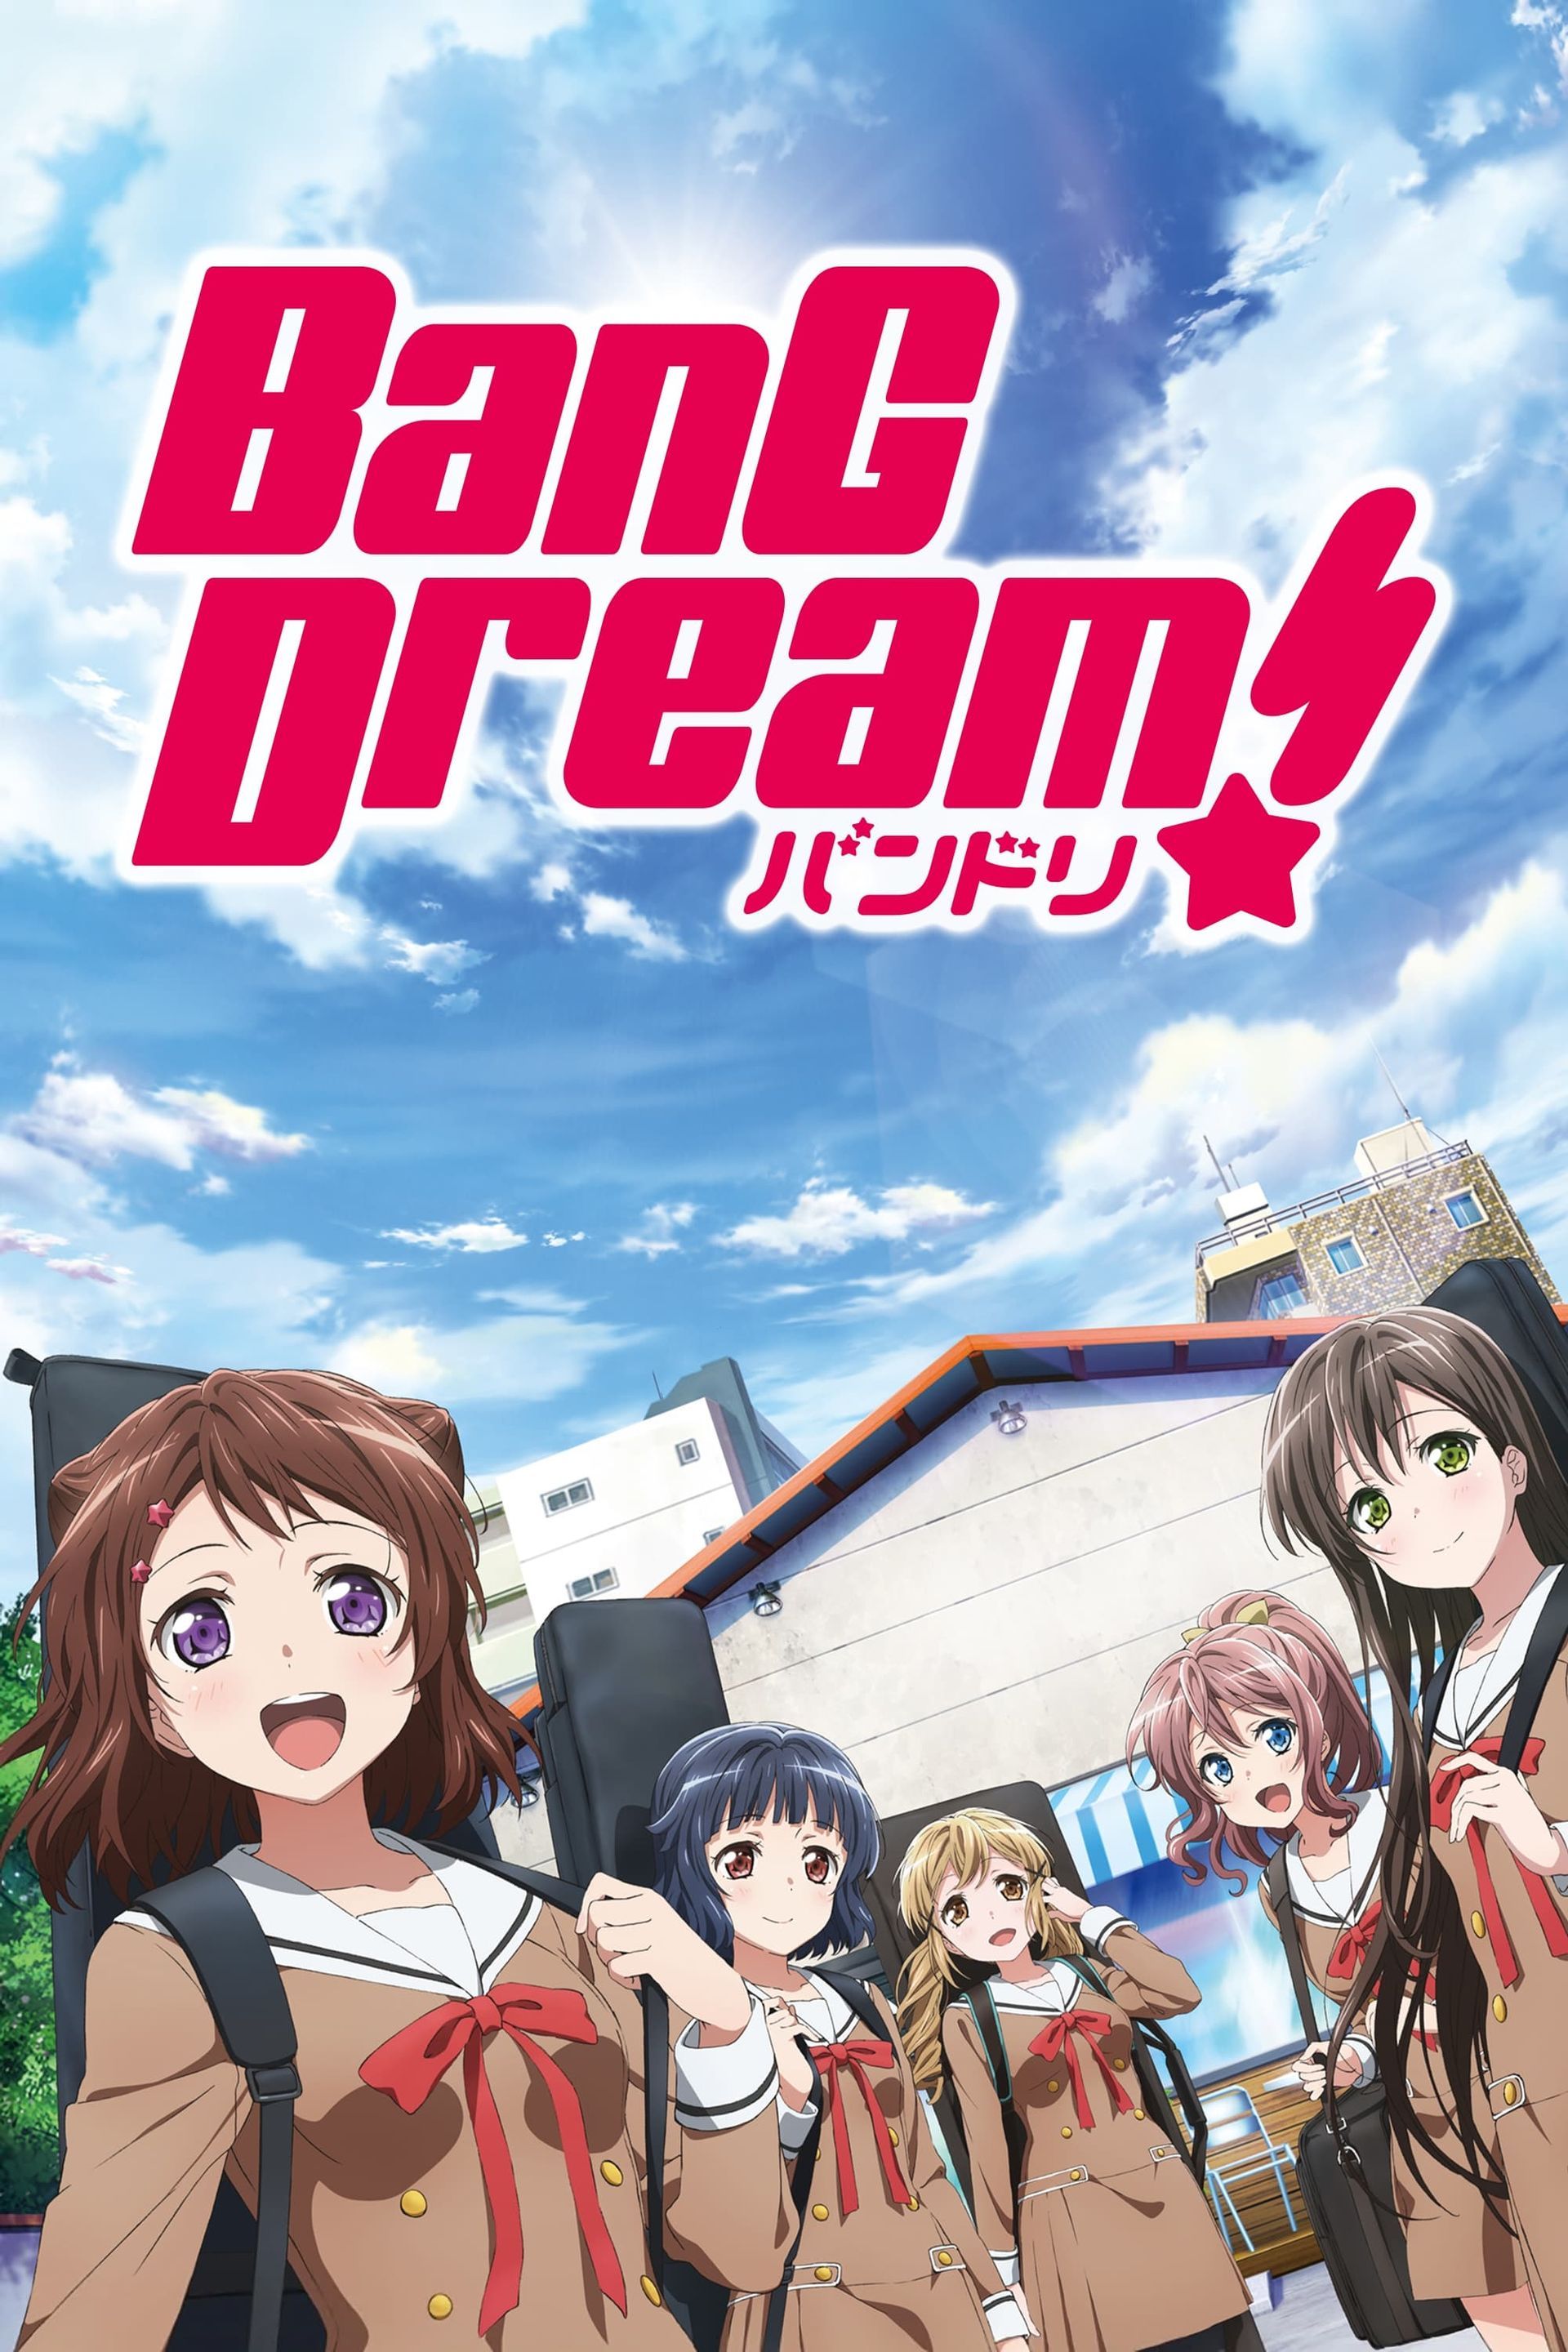 Watch BanG Dream! It's MyGO!!!!! · Season 1 Episode 10 · Always Lost Full  Episode Online - Plex